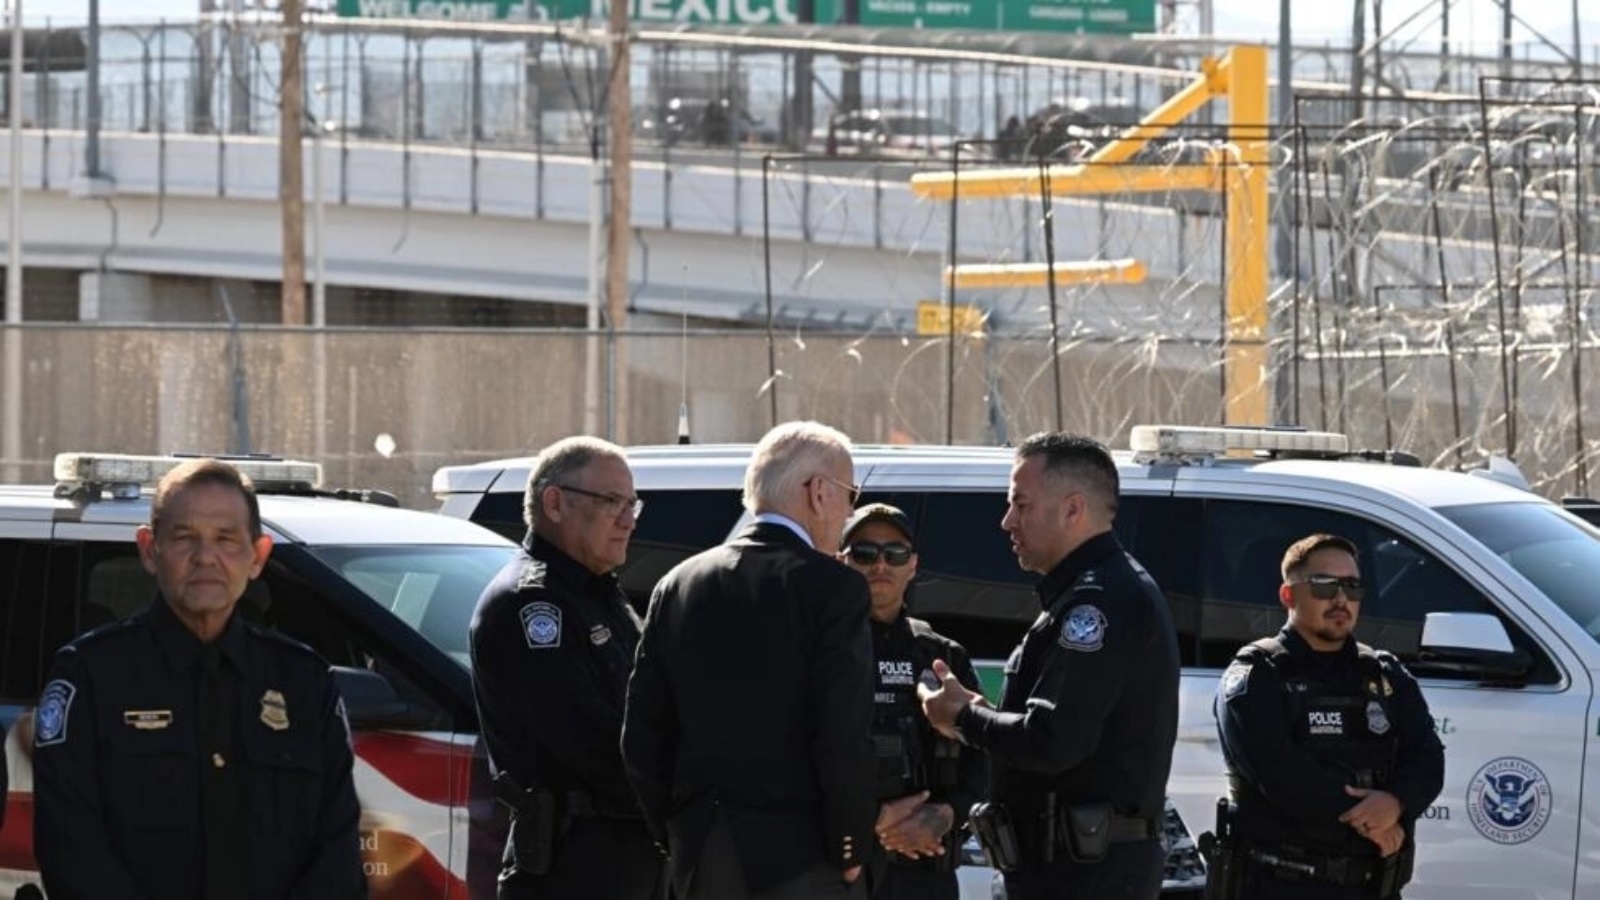 الرئيس الأميركي جو بايدن (وسط) يتحدث مع مسؤولين في الجمارك الأميركية وشرطة حماية الحدود على معبر جسر الأميركيتين في مدينة إل باسو بولاية تكساس في 8 يناير 2023